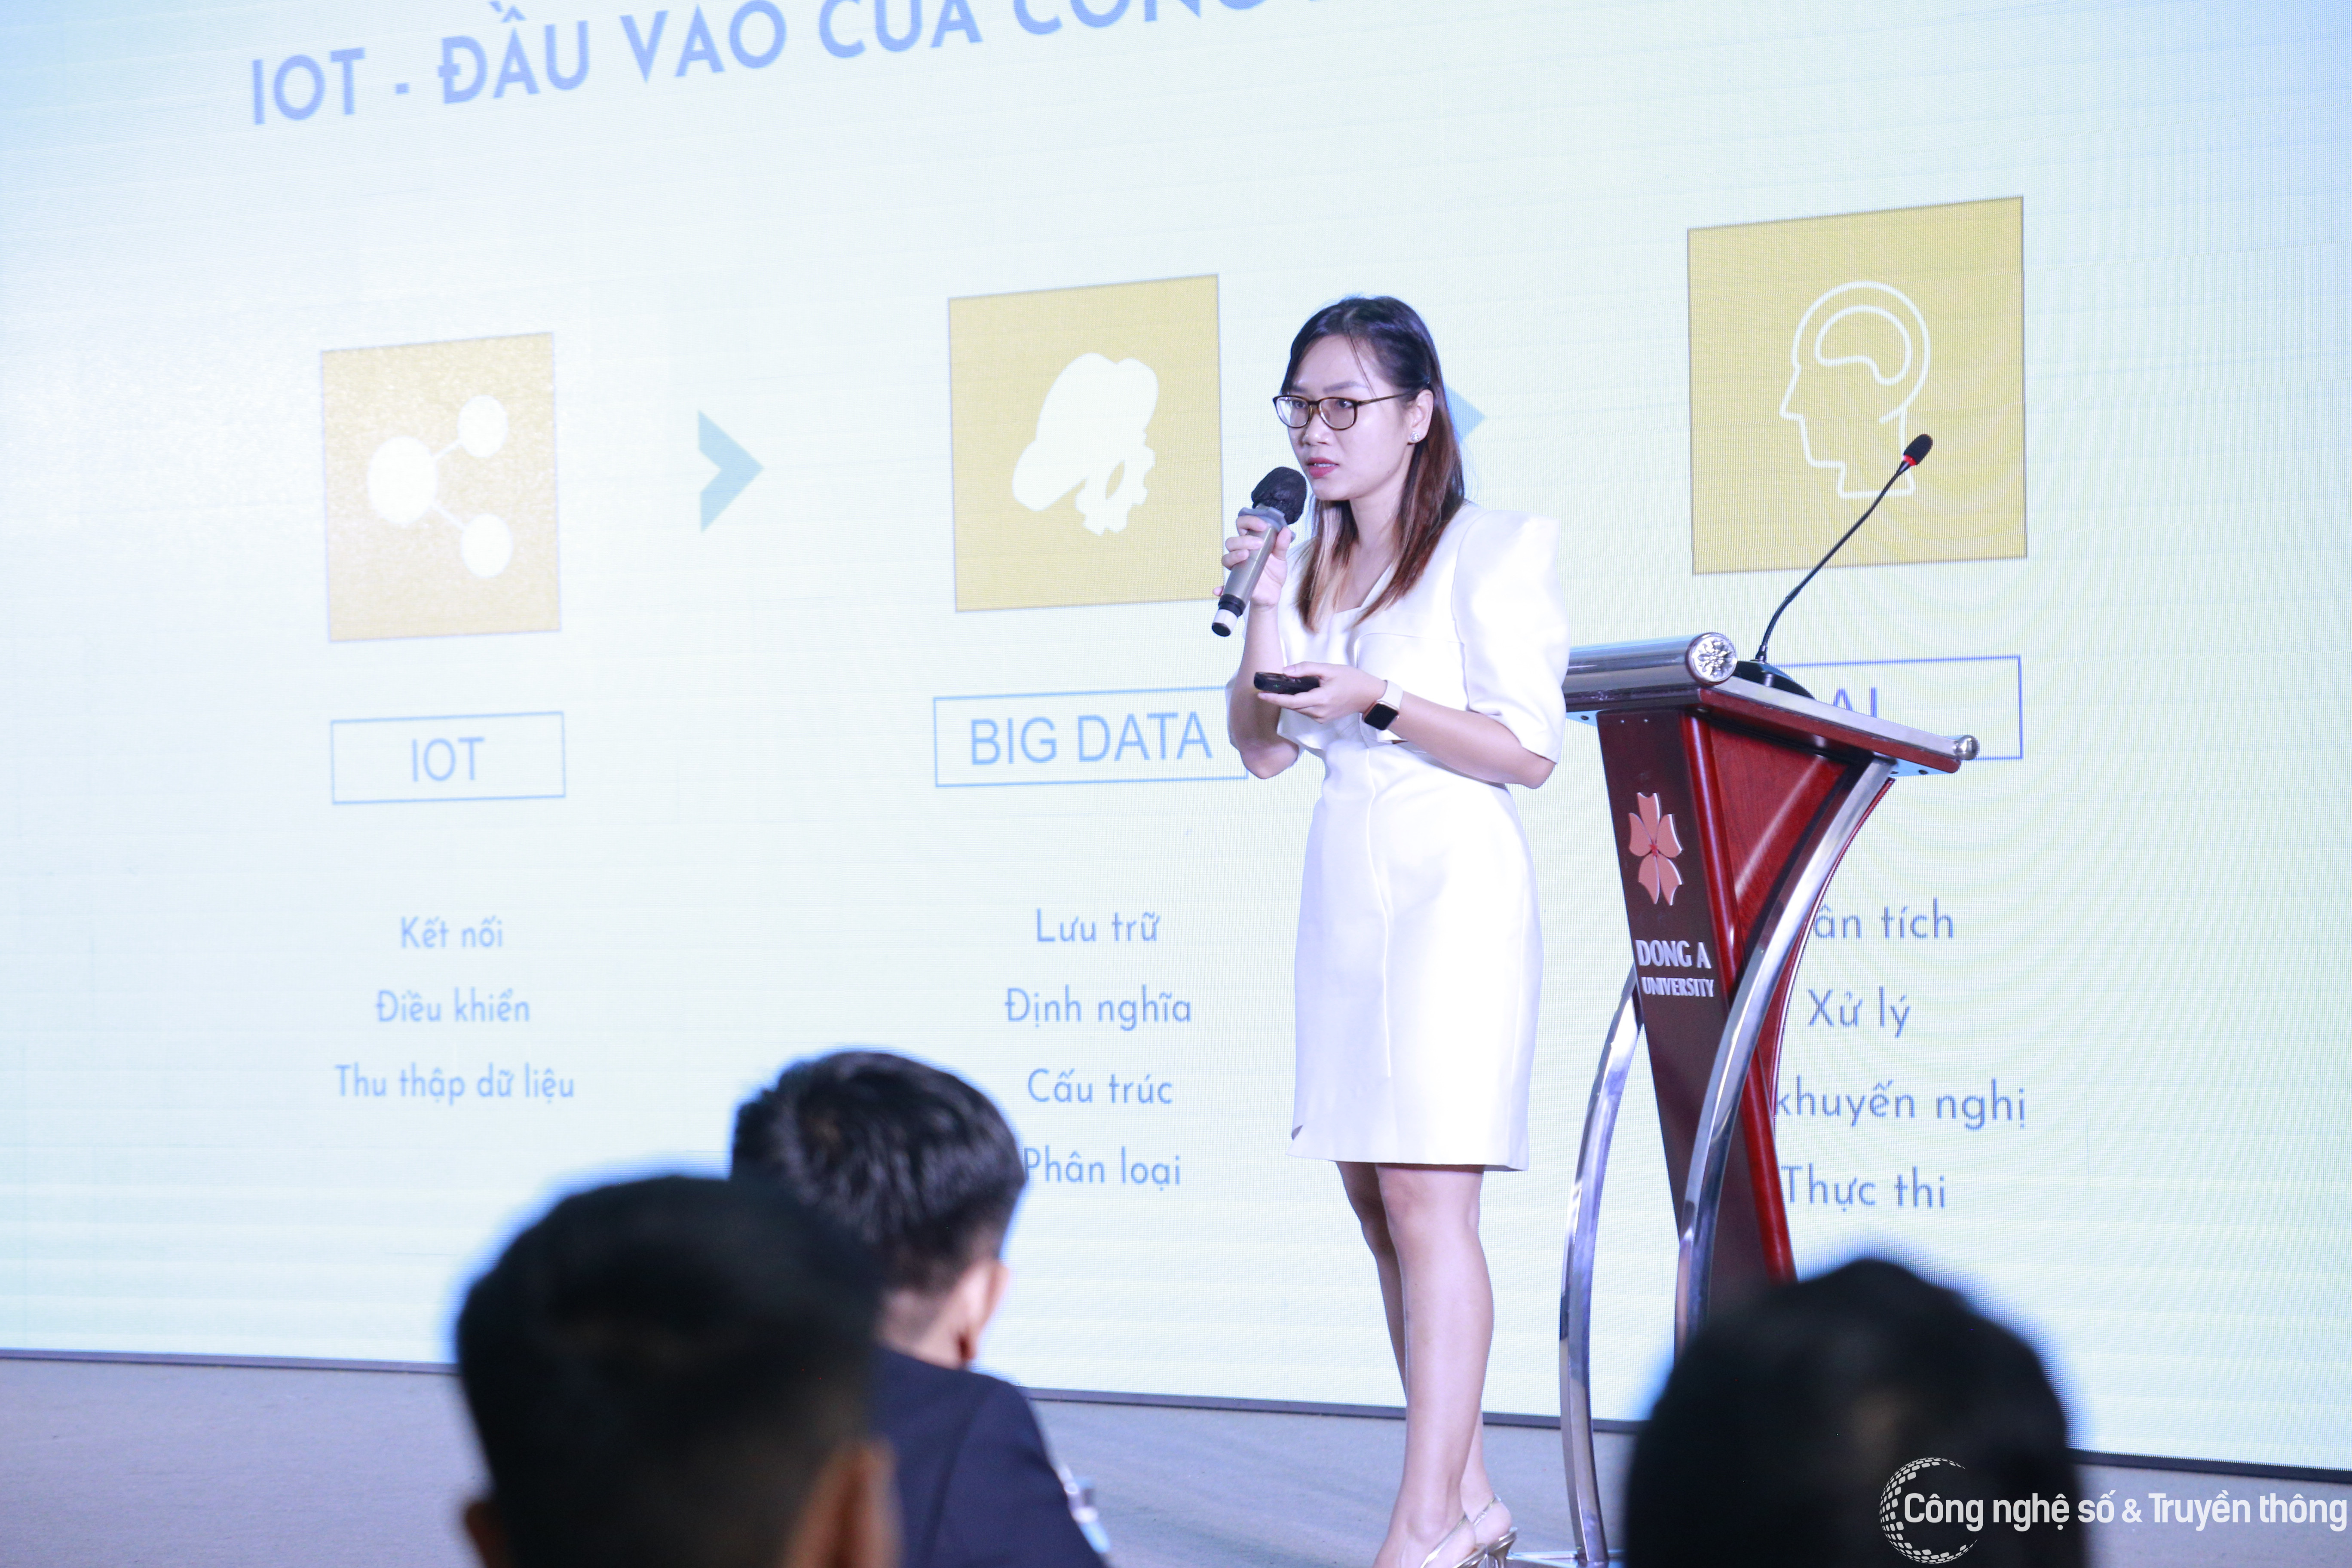 Việt Nam thiếu nguồn cung nhân lực về IoT | MATE